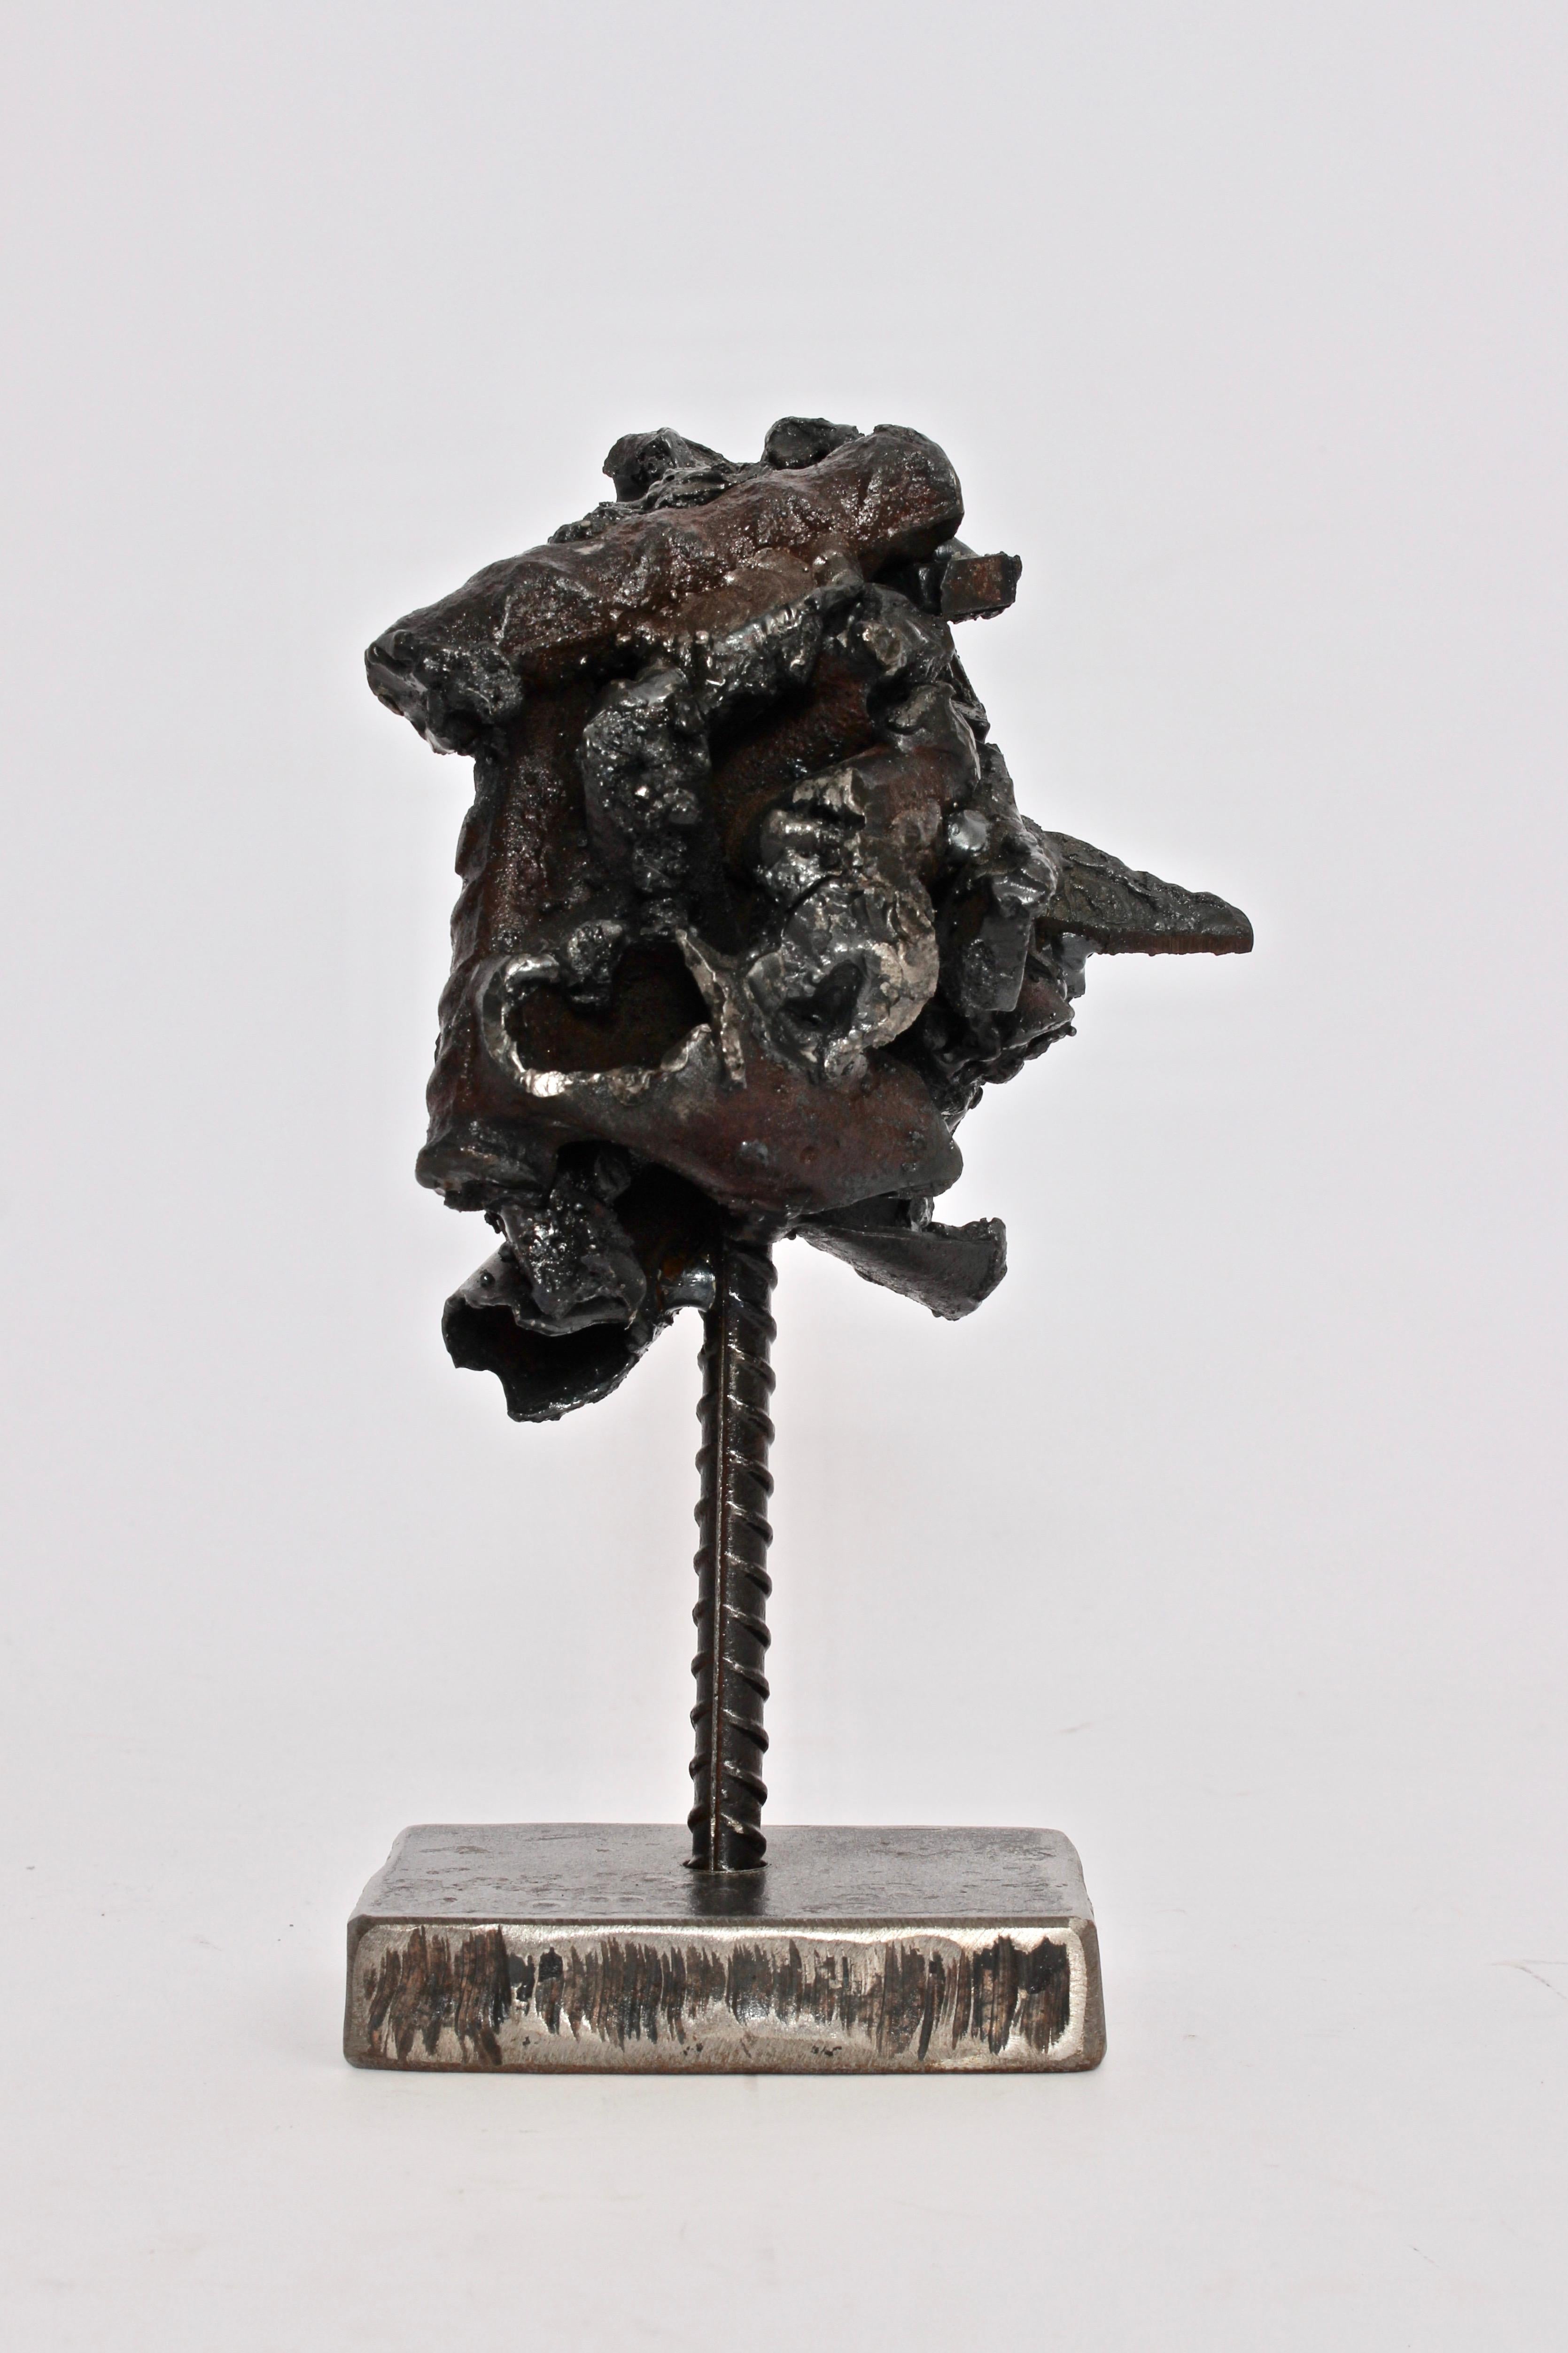 Metal Brian Watters Abstract Art Studio Welded Steel Table Sculpture, 2014